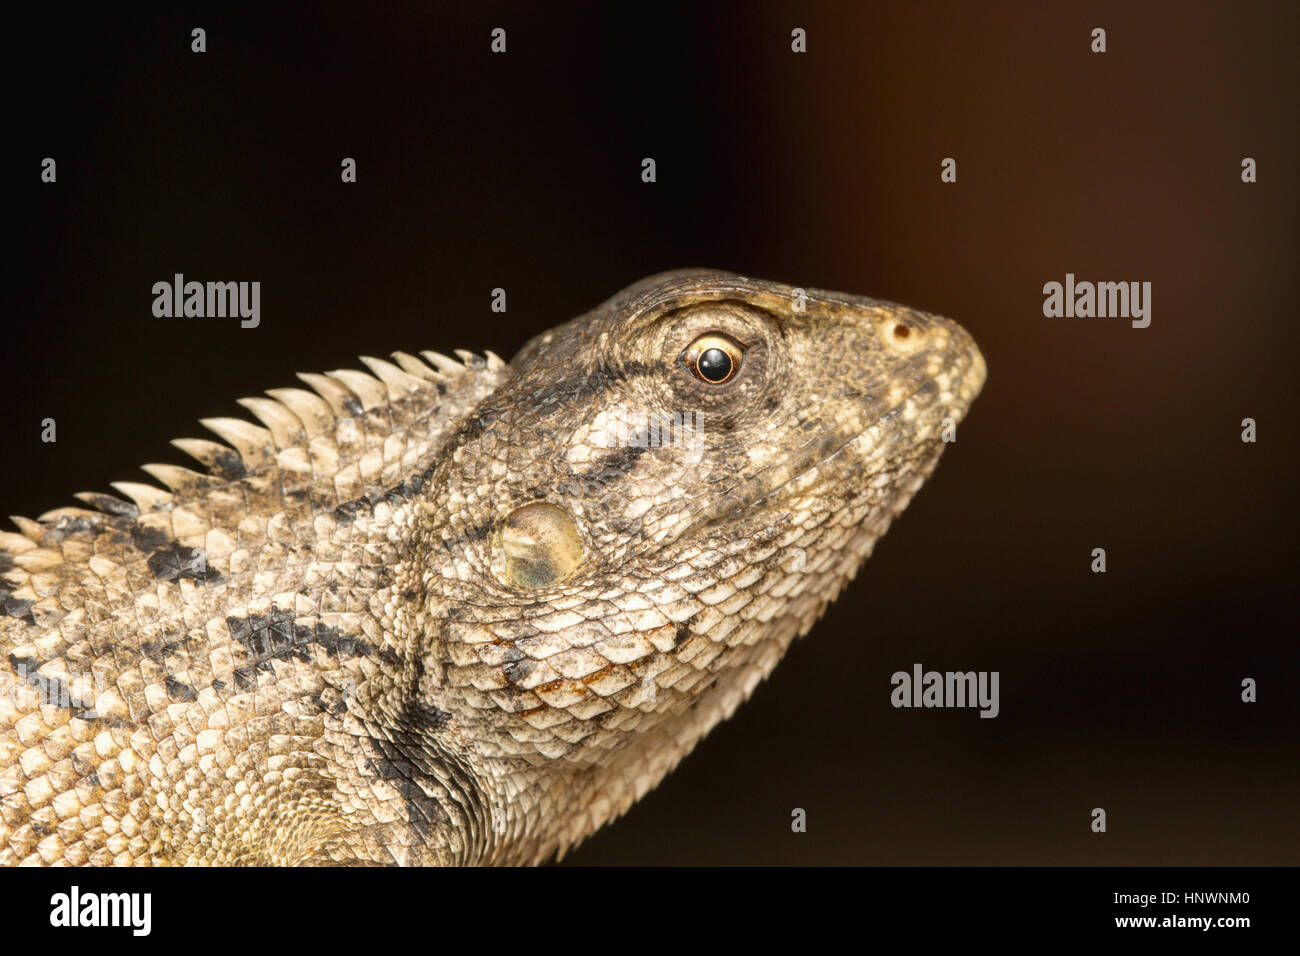 Giardino in comune lucertola, Calotes versicolor, Chitrakoot, Chhattisharg. Drago lizard trovato ampiamente distribuito in Asia Foto Stock